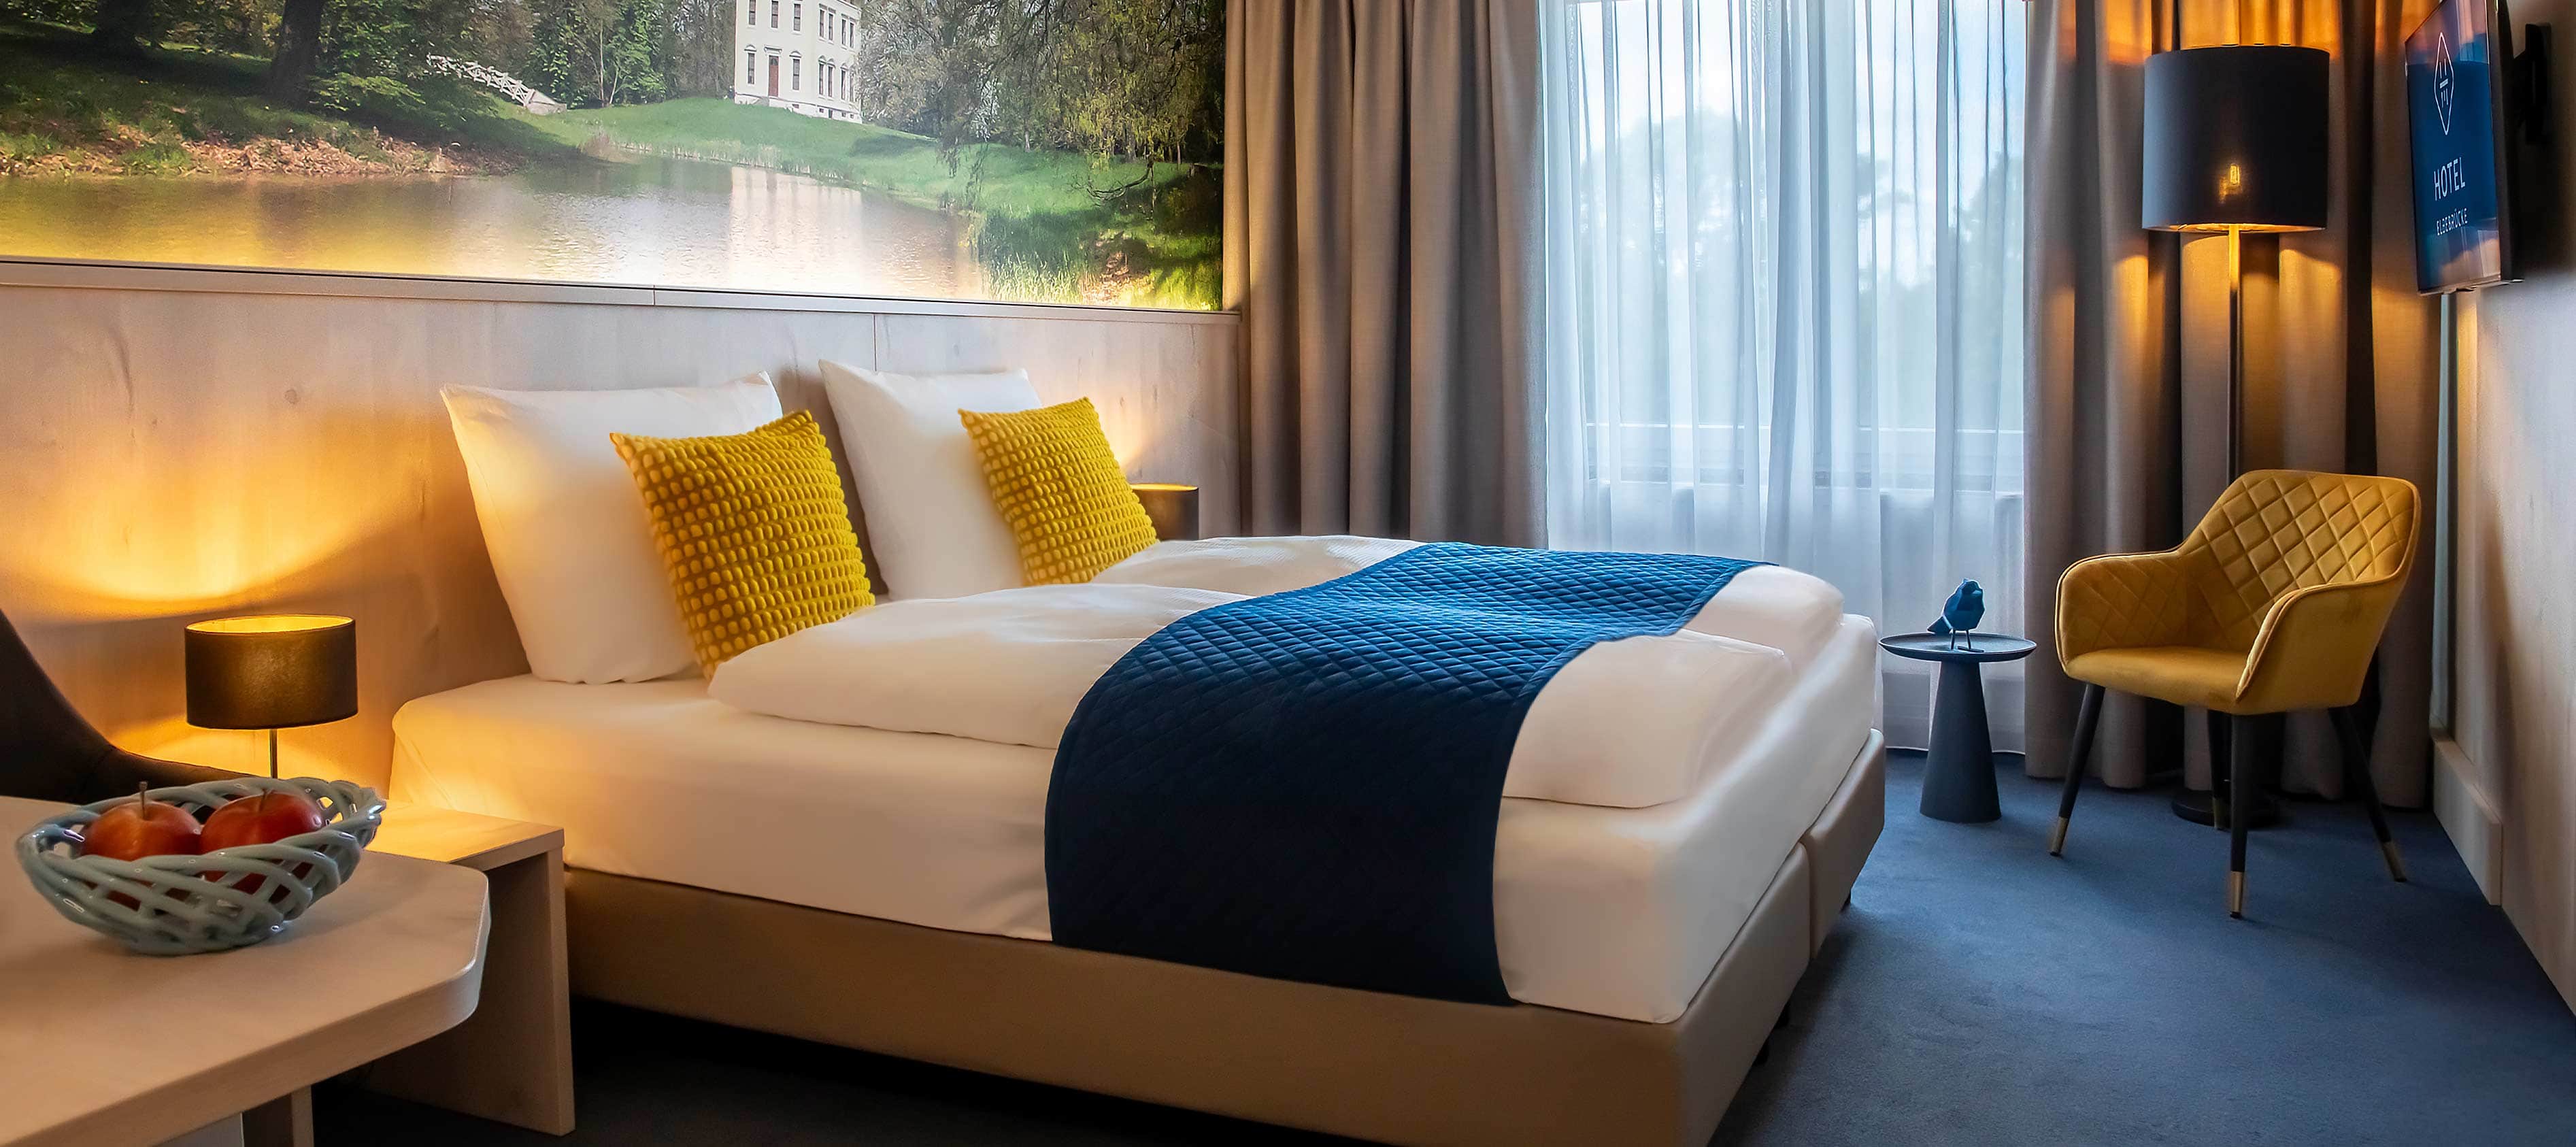 Foto eines einladenden Hotelzimmers im Hotel Elbebrücke bei Dessau, ausgestattet mit Doppelbett, TV und Loungesessel